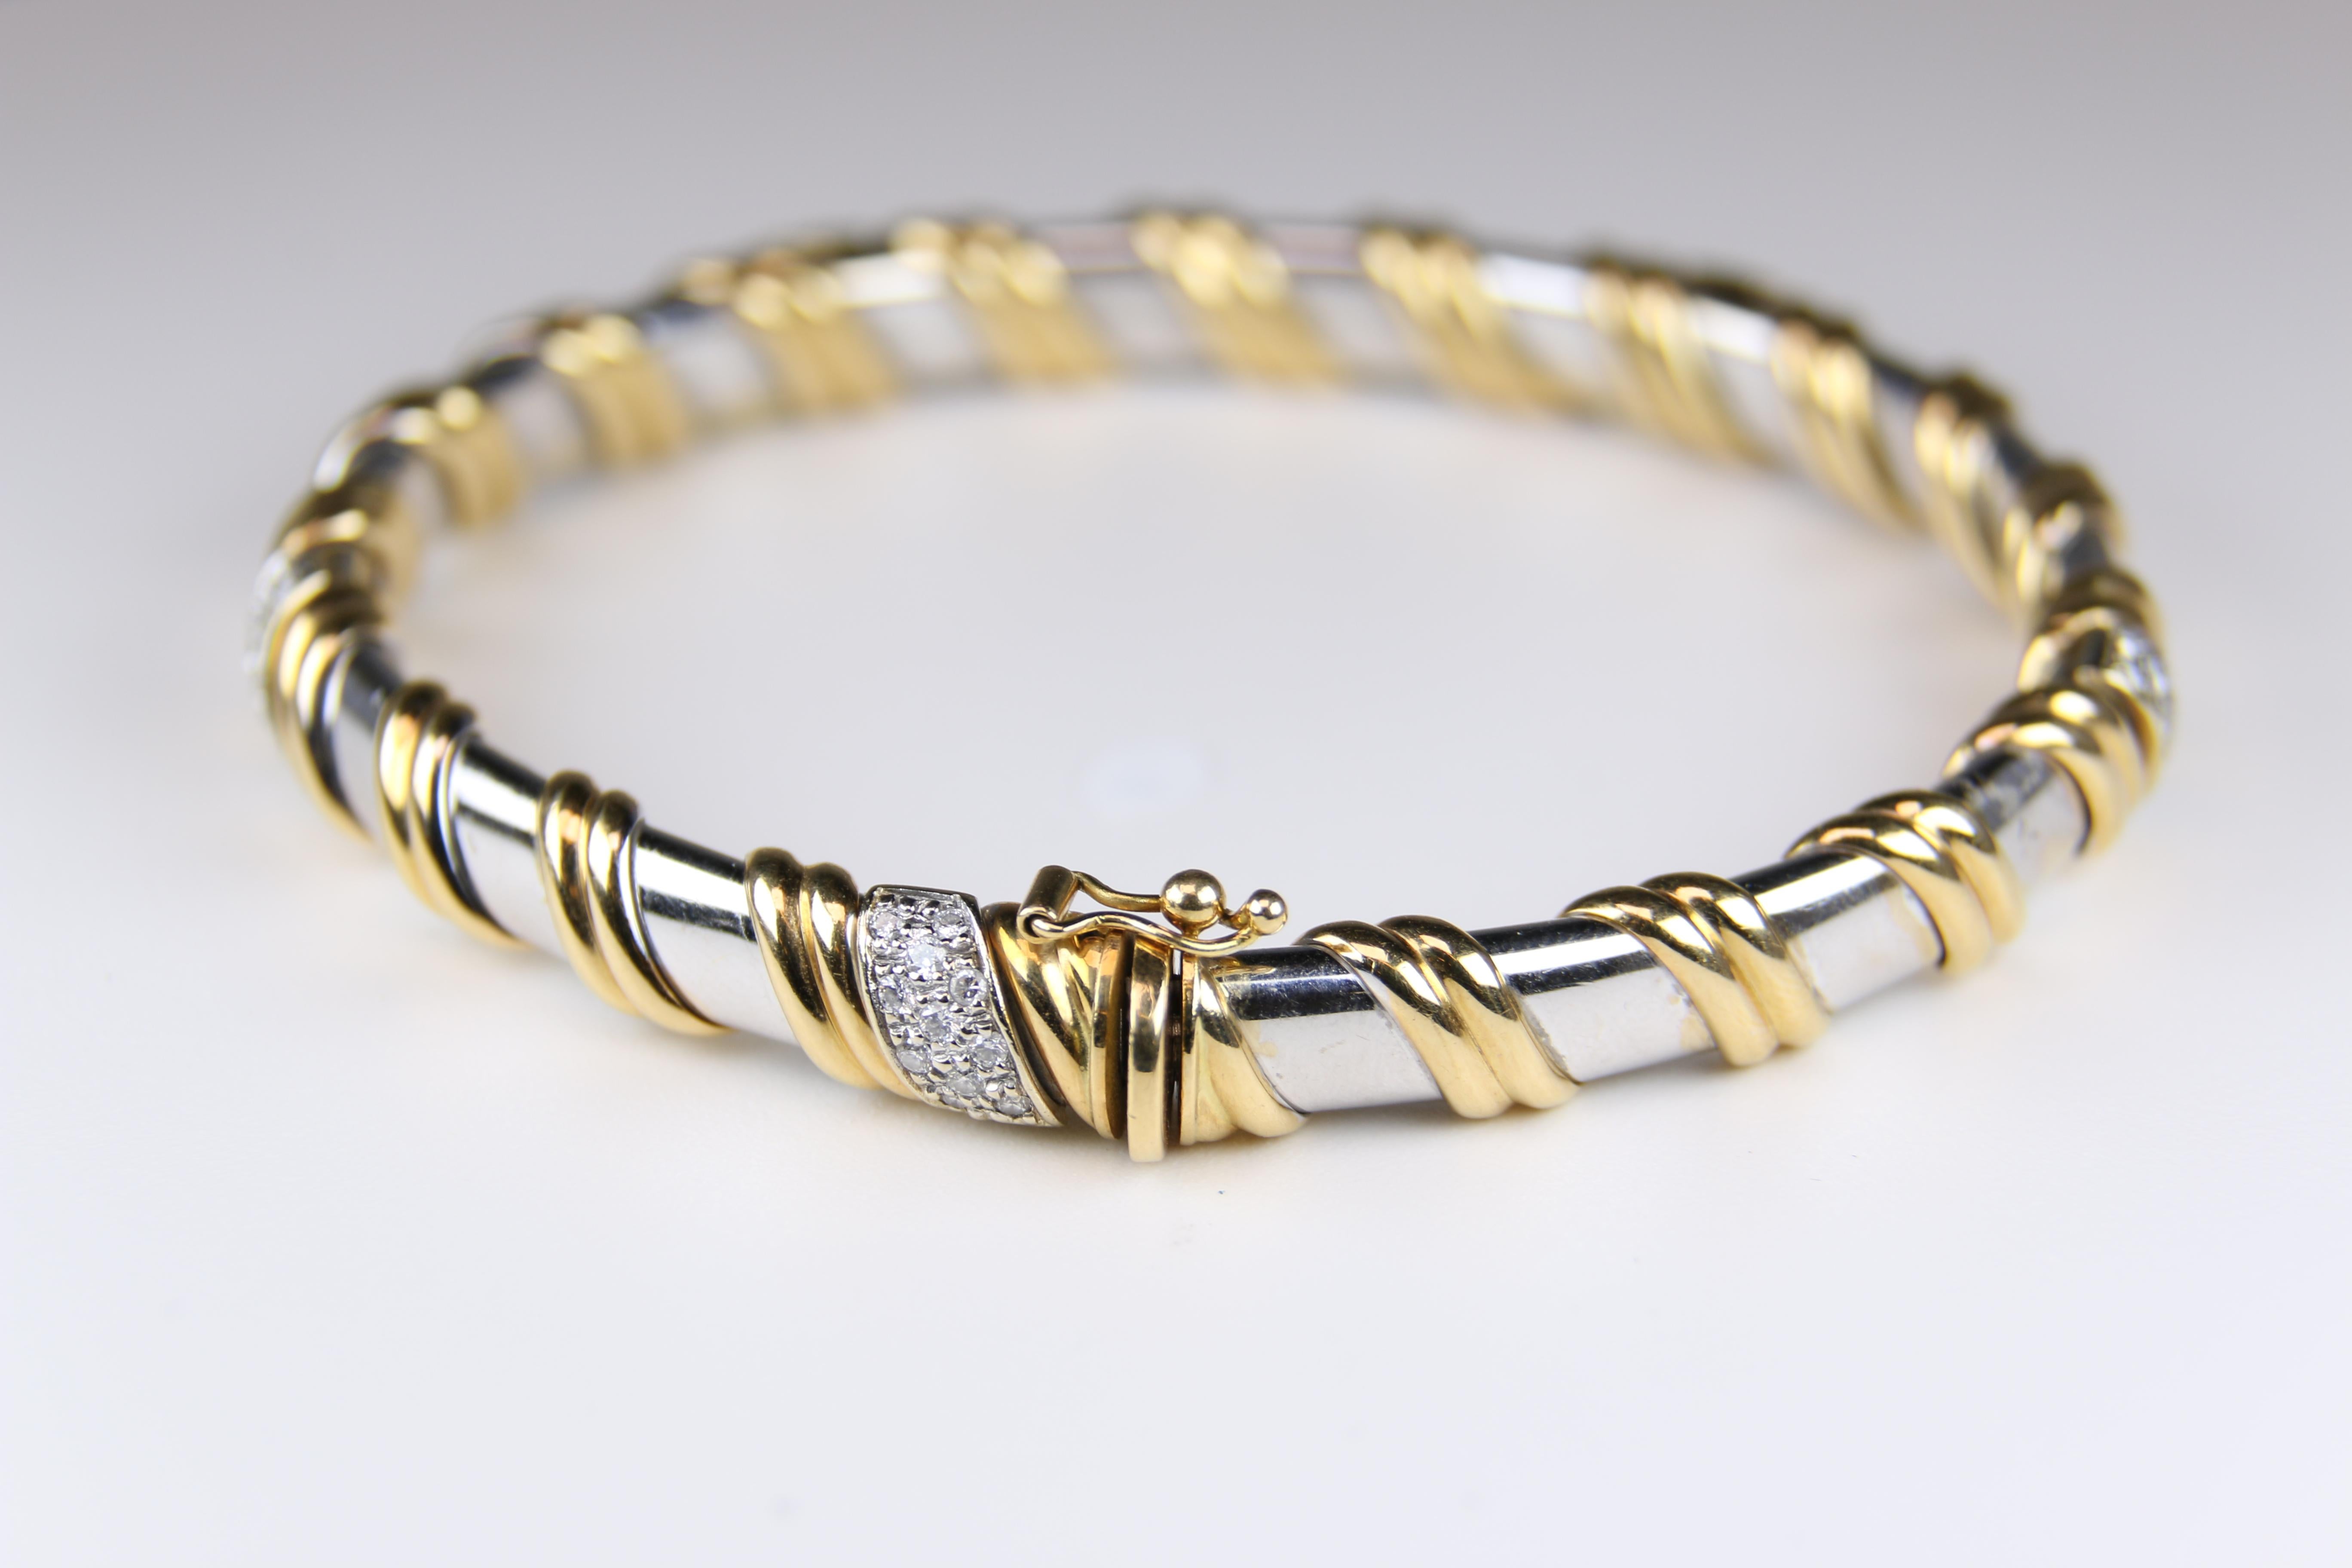 Bracelet en or à deux tons et diamants.  Or blanc et jaune.  Un look classique. 